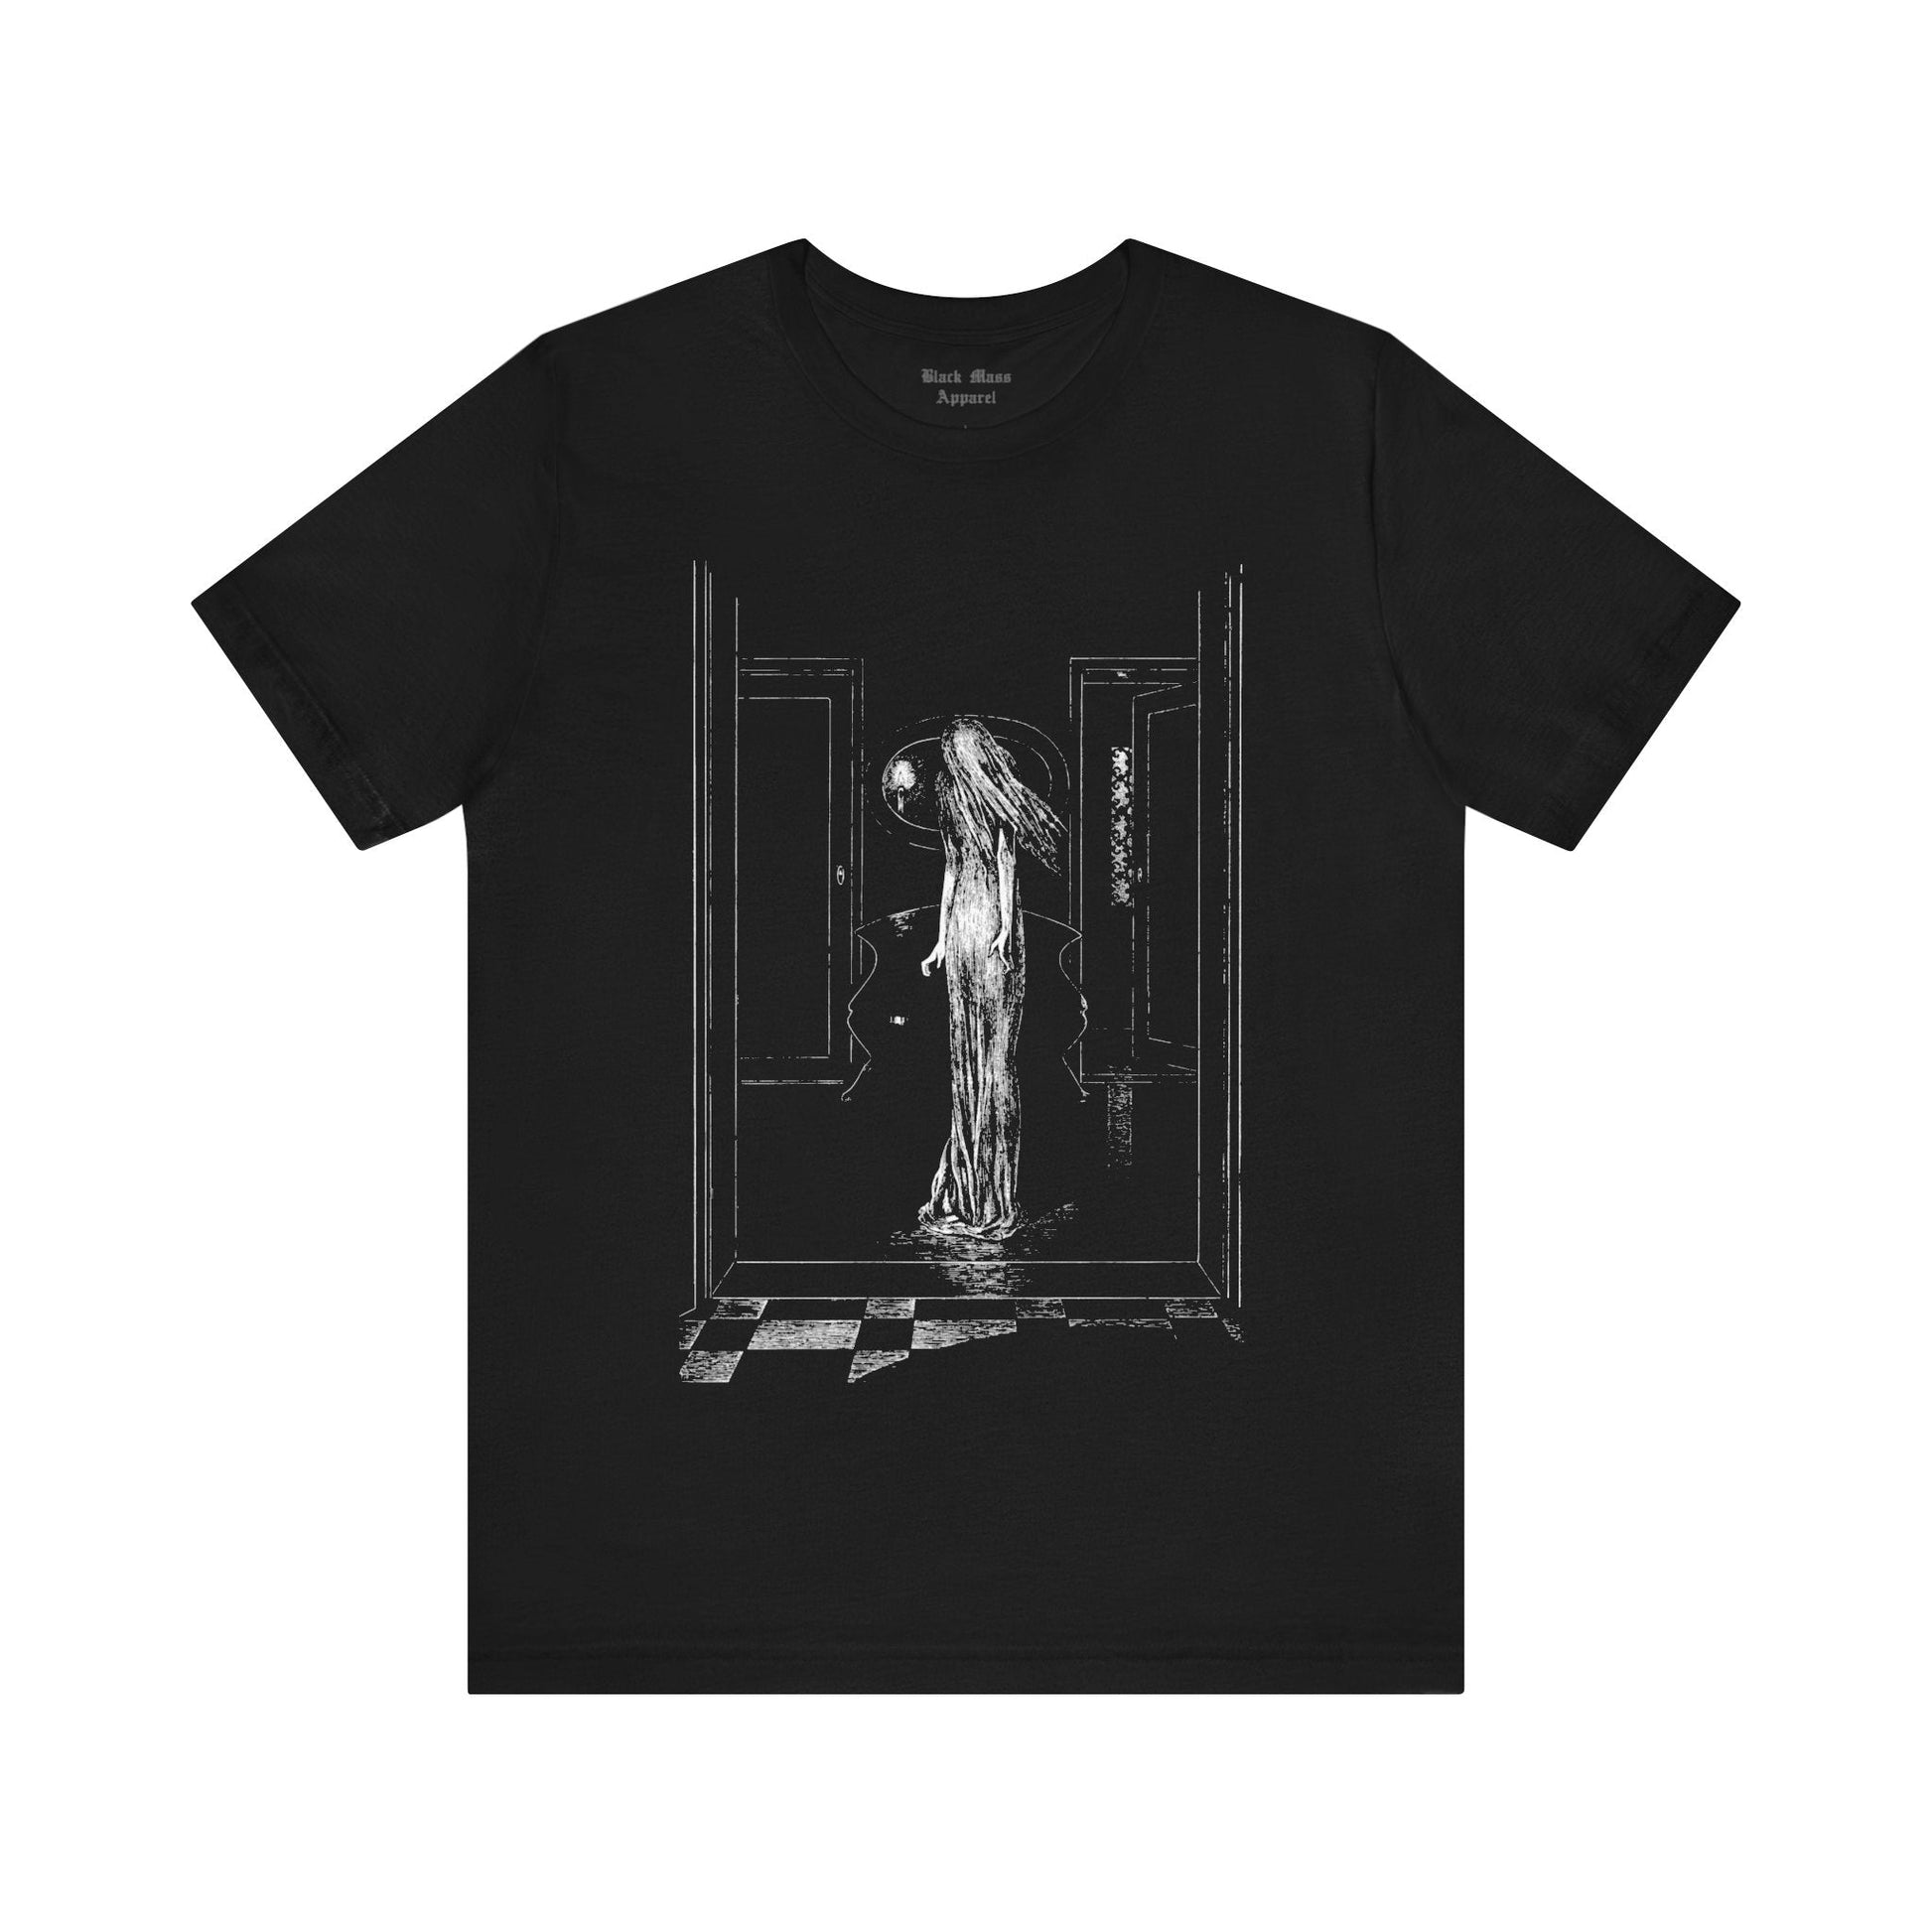 Ghost - Black Mass Apparel - T-Shirt